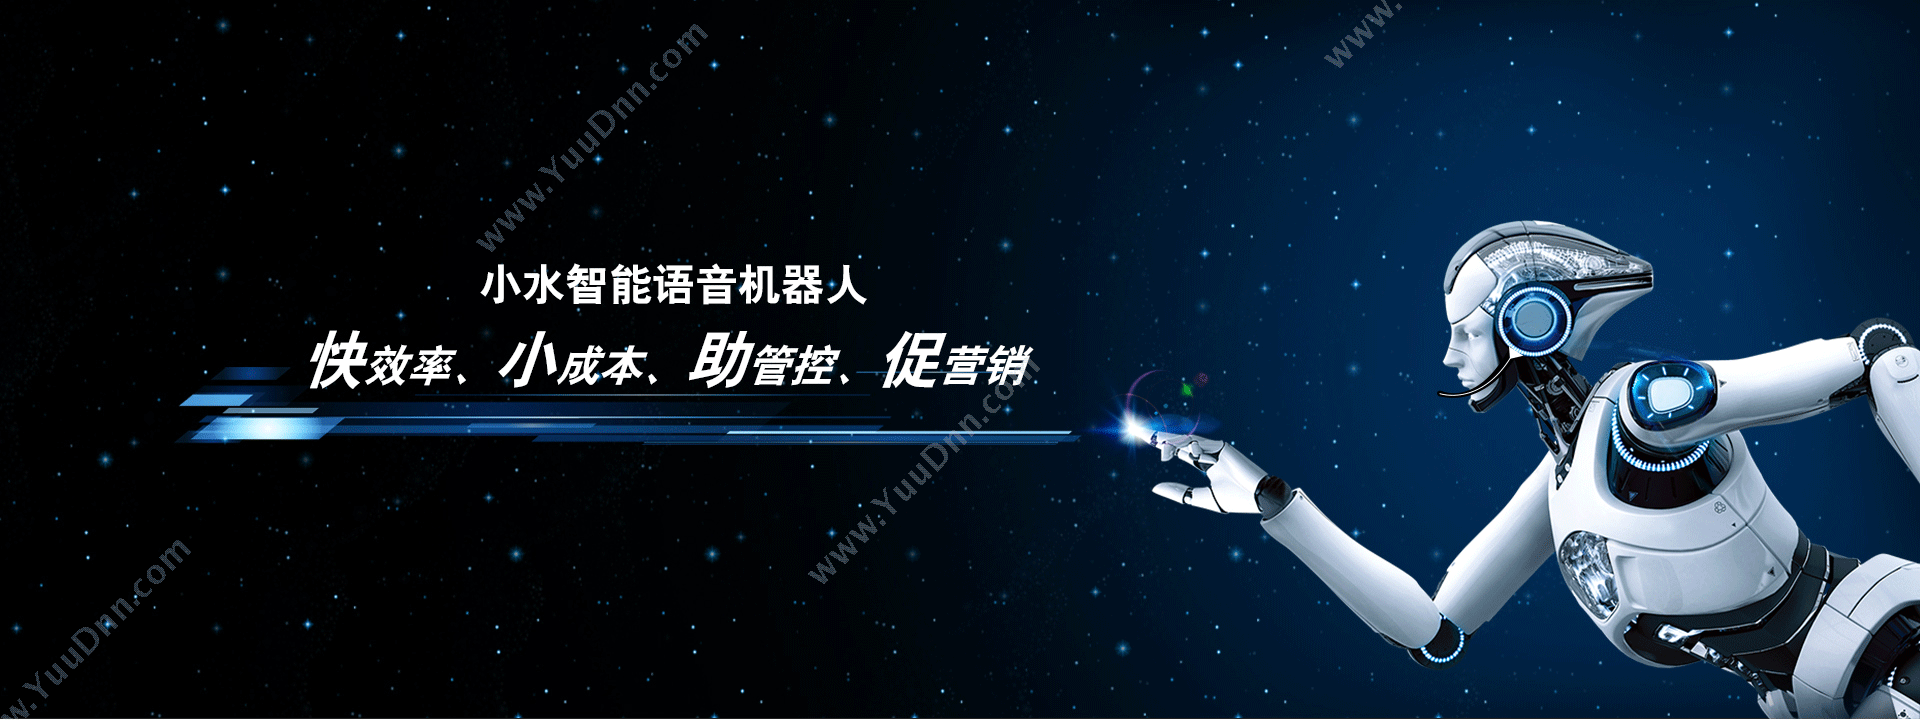 北京烽火万家科技有限公司 小水智能-电销机器人 客服机器人